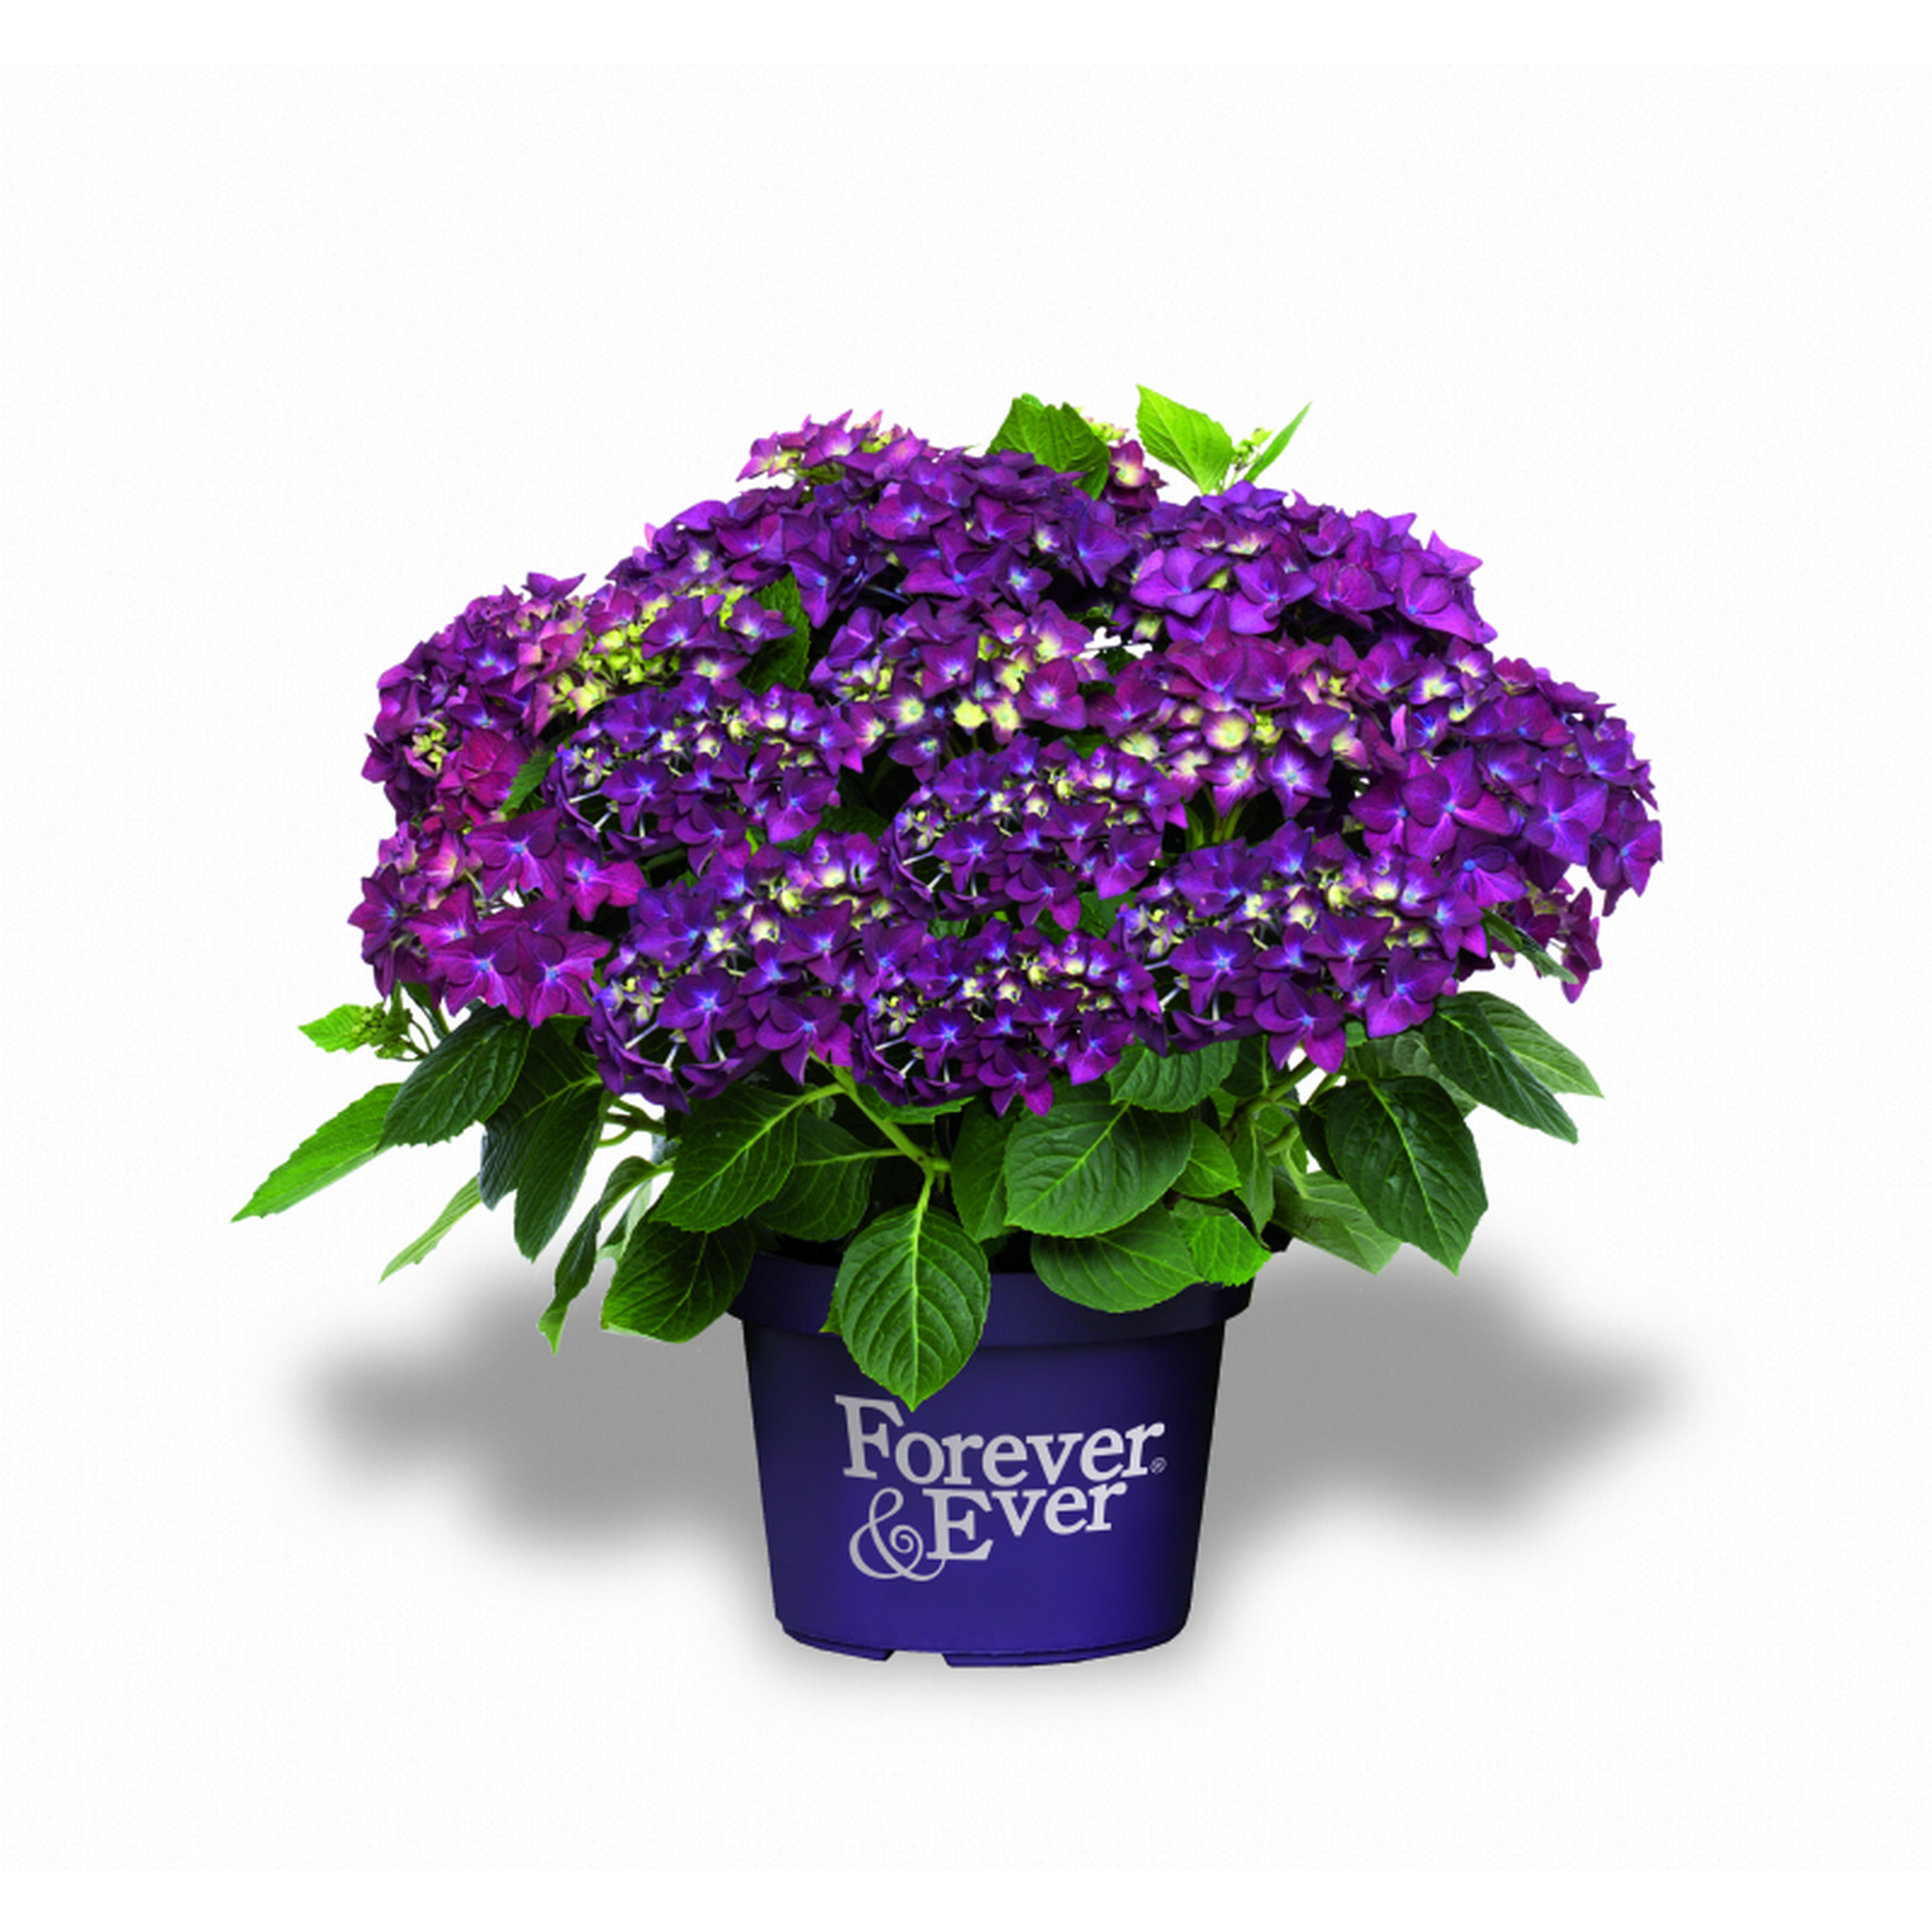 Hortensie 'Forever & Ever®' violett, Topf Ø 23 cm + product picture